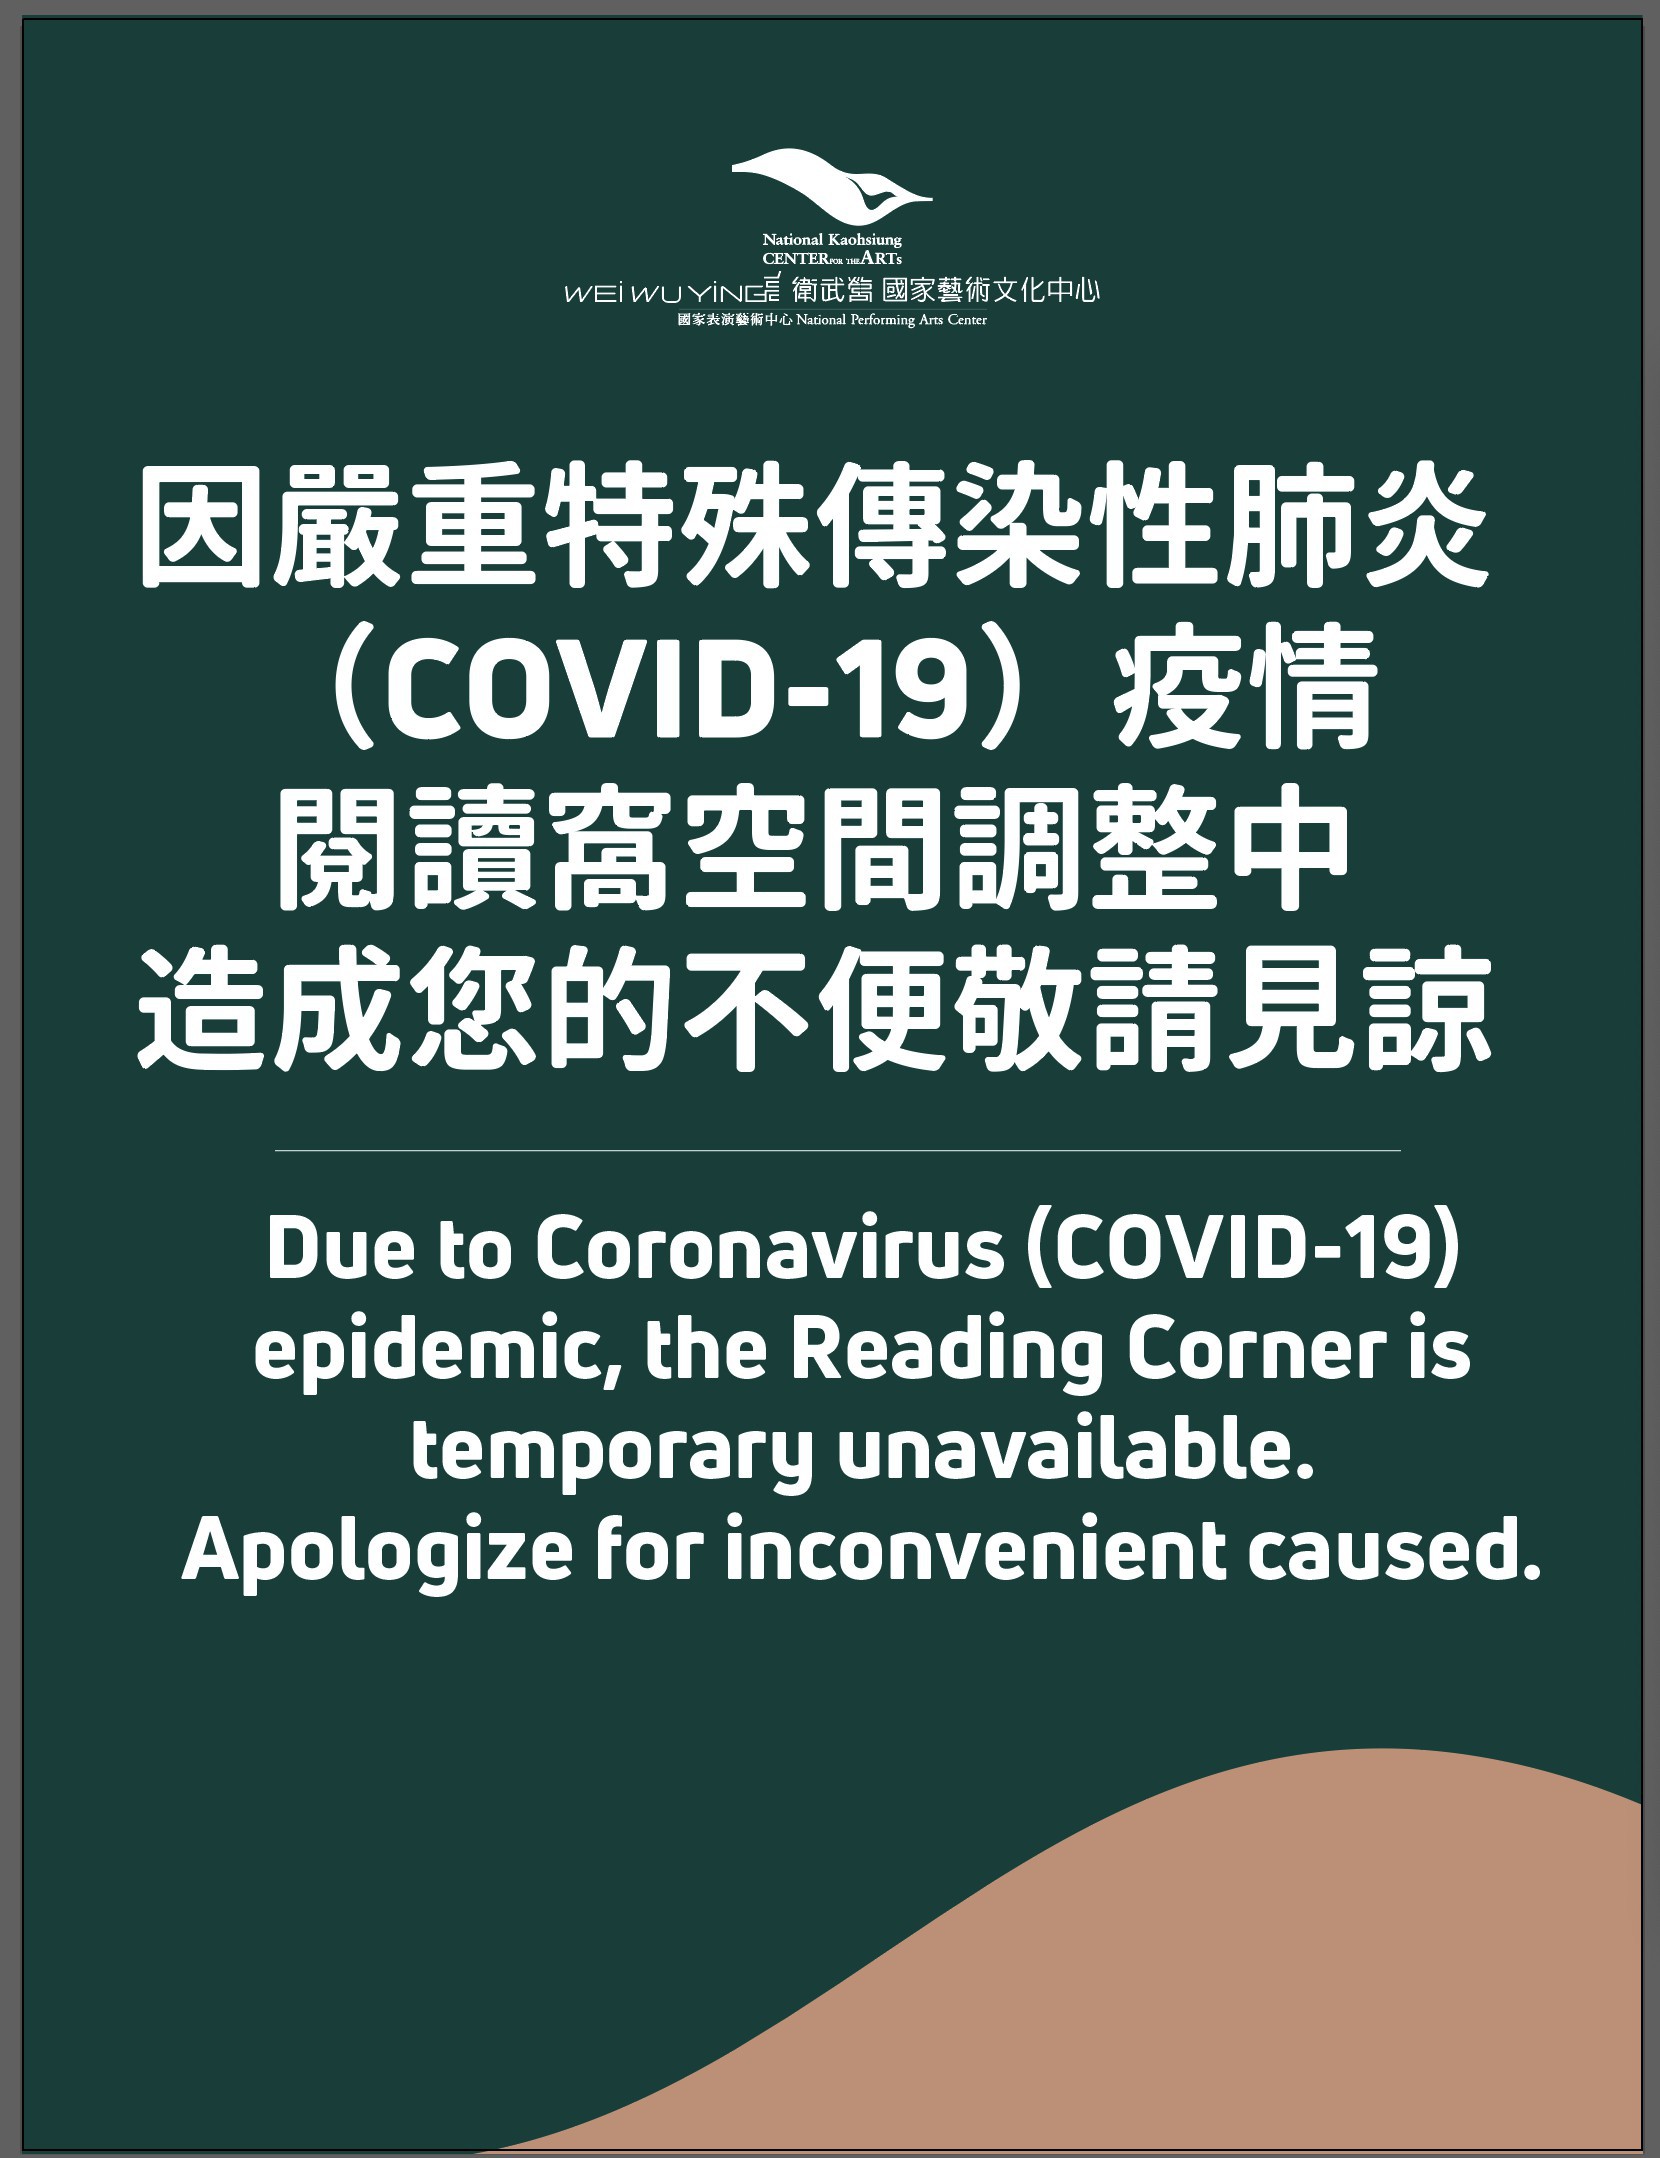 因嚴重特殊傳染性肺炎（COVID-19）疫情，閱讀窩空間調整中，造成您的不便敬請見諒。